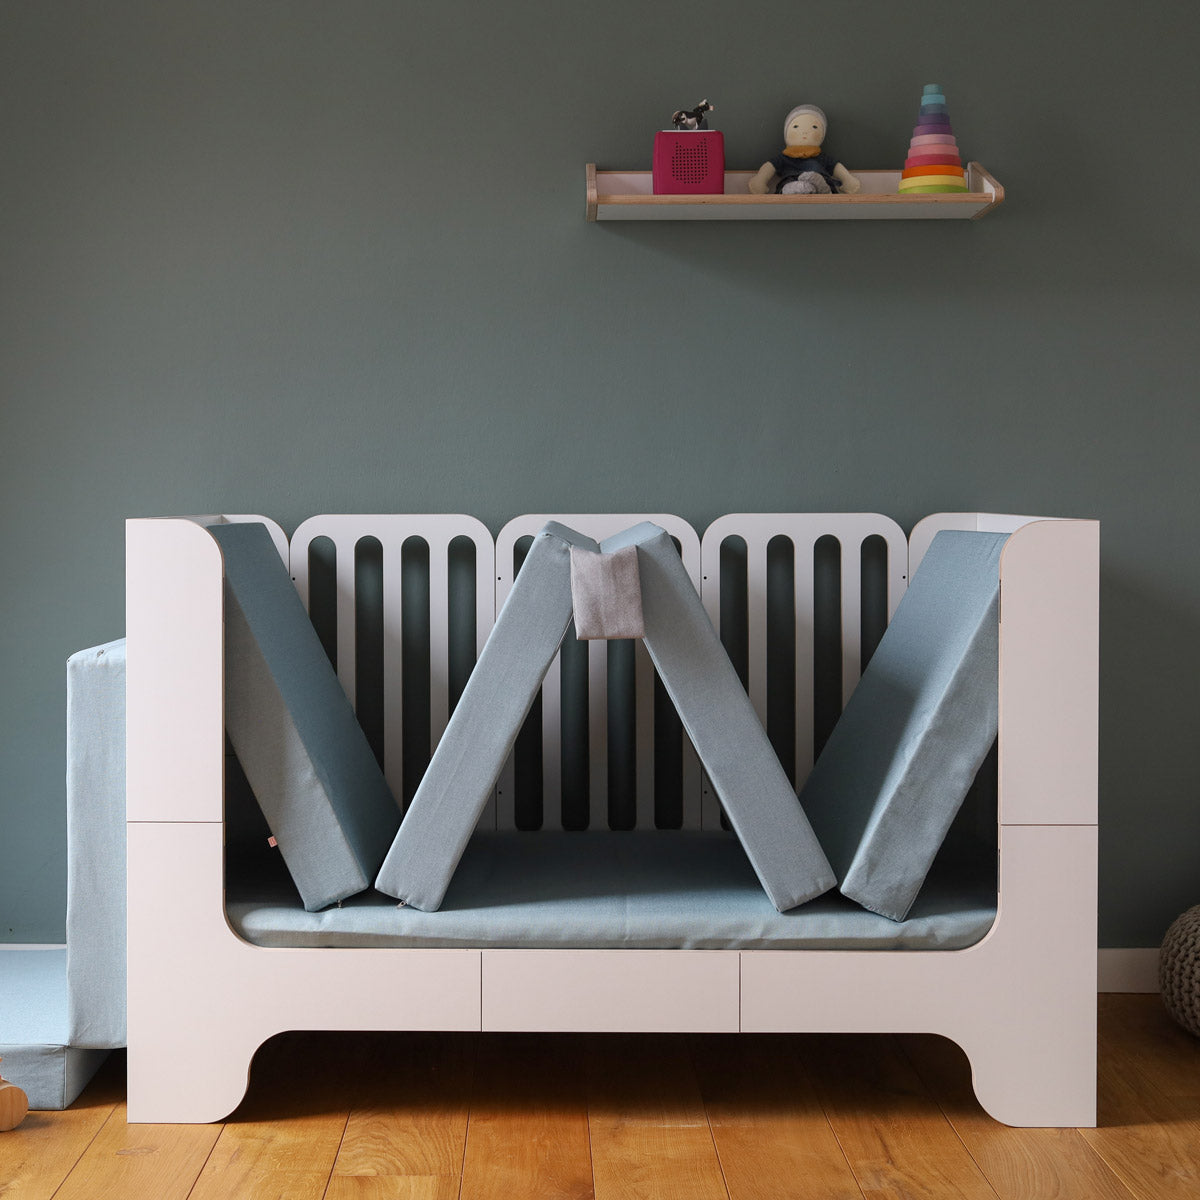 Polsterset von Nanito für Kinderbett Minimalmaxi als Sofa Polster aufgestellt